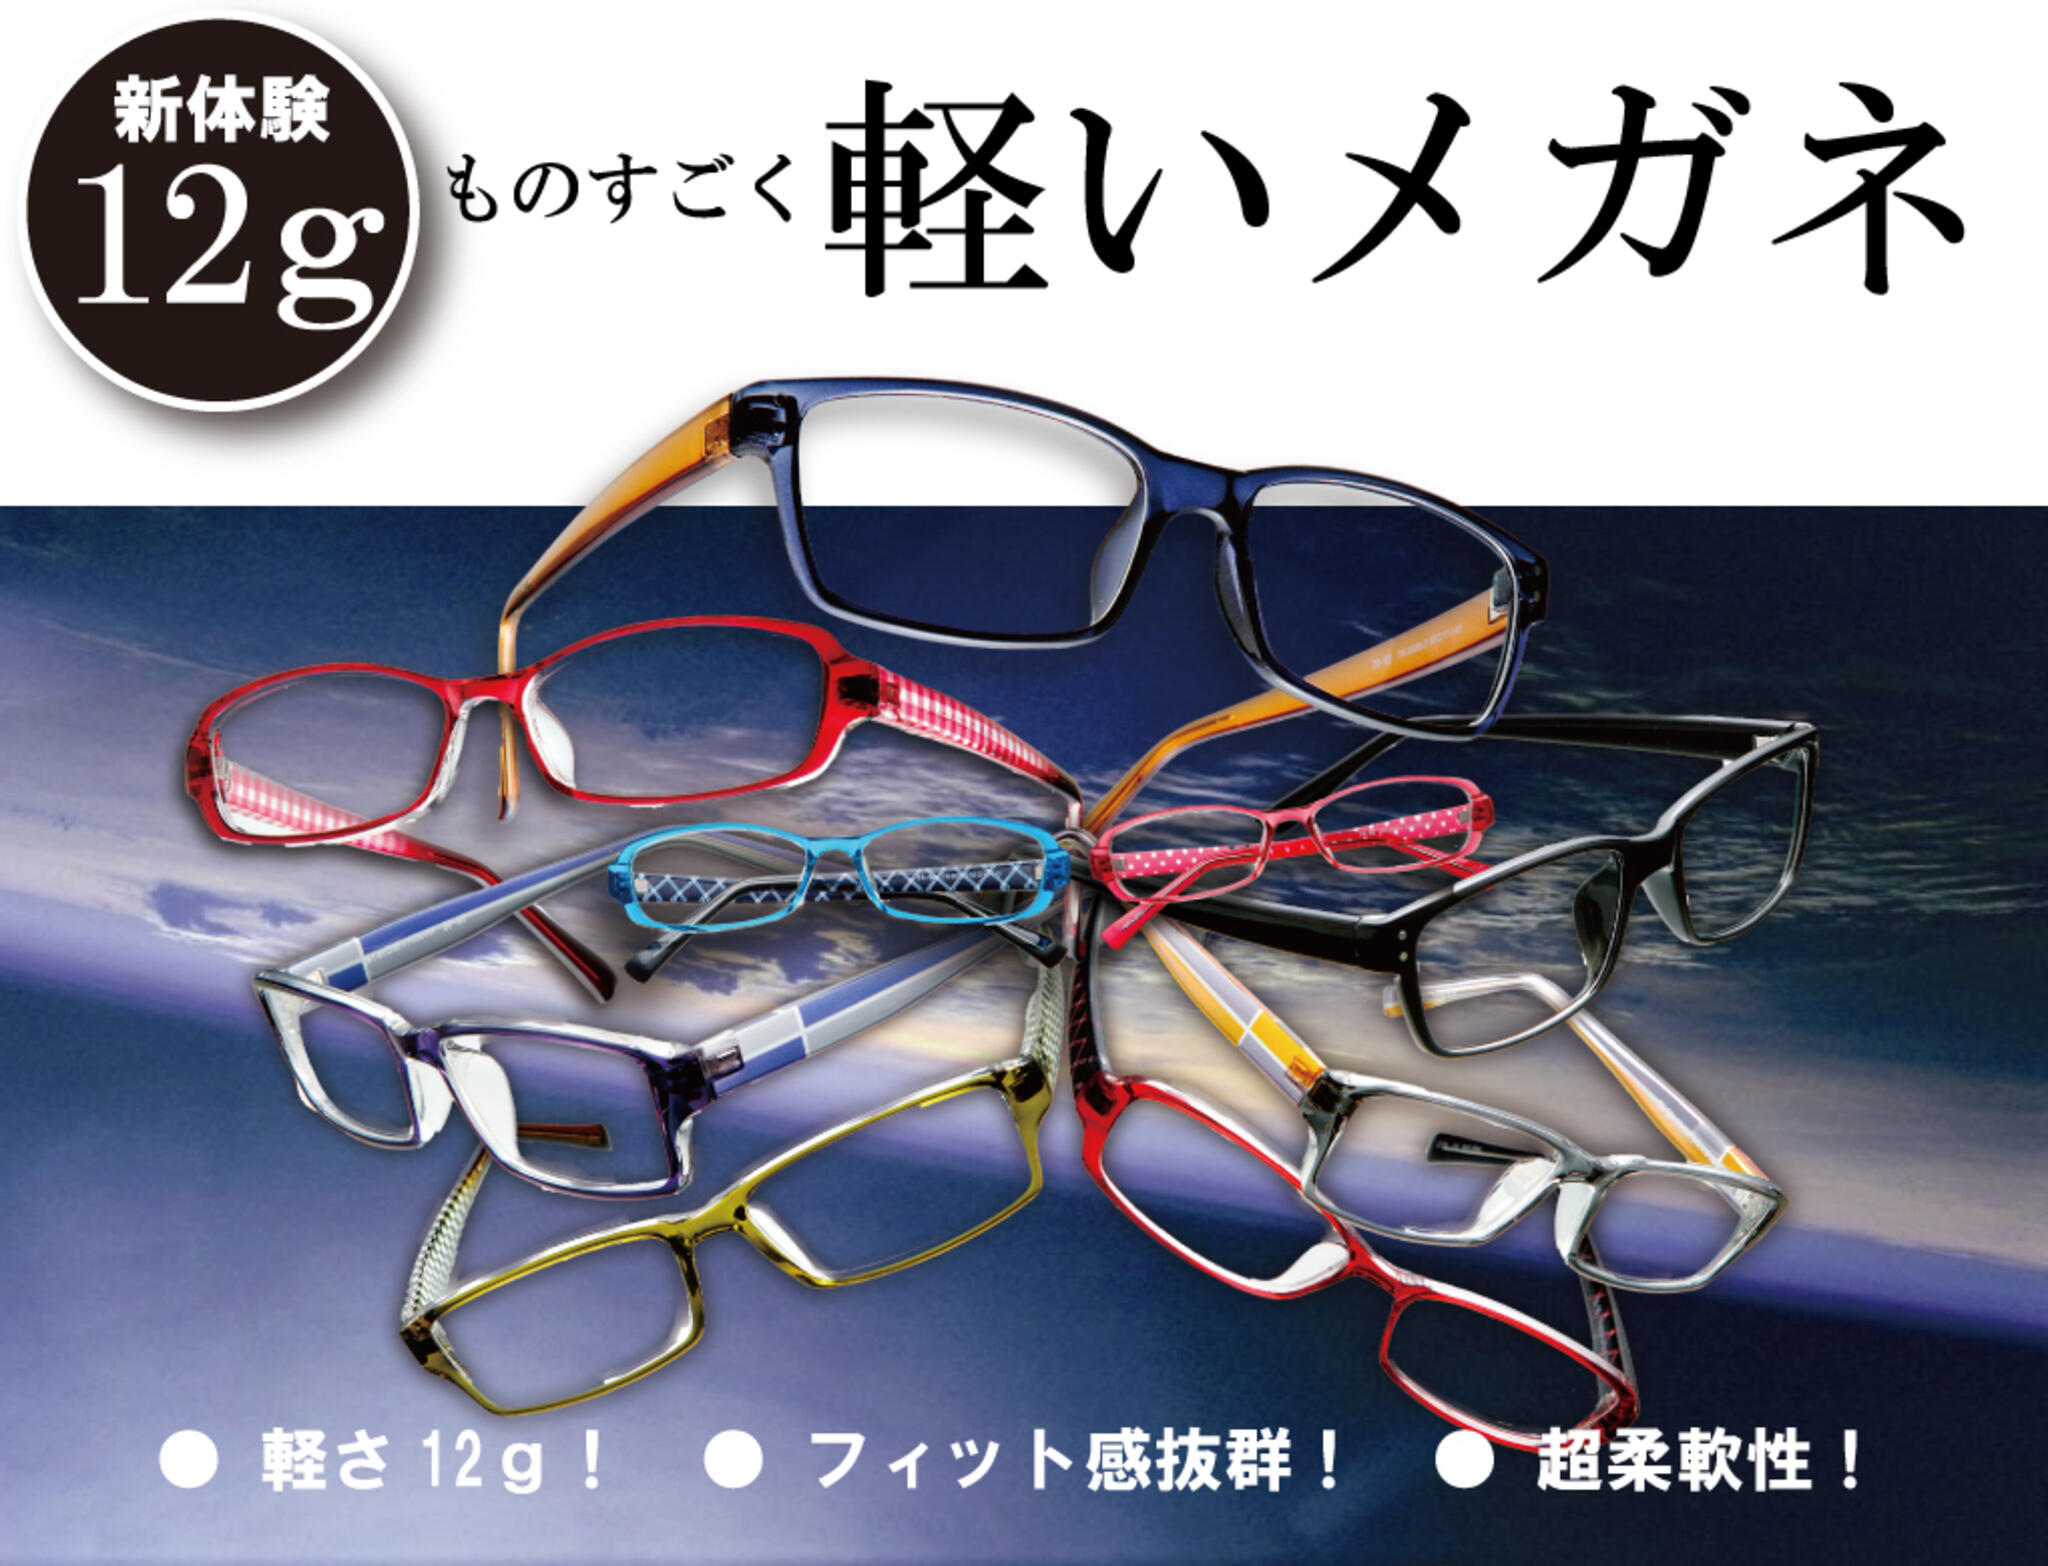 ドクターアイズ宮崎大塚店からのお知らせ(軽い！メガネはこれがおすすめ！｜新体験の12ｇの真空フレーム )に関する写真